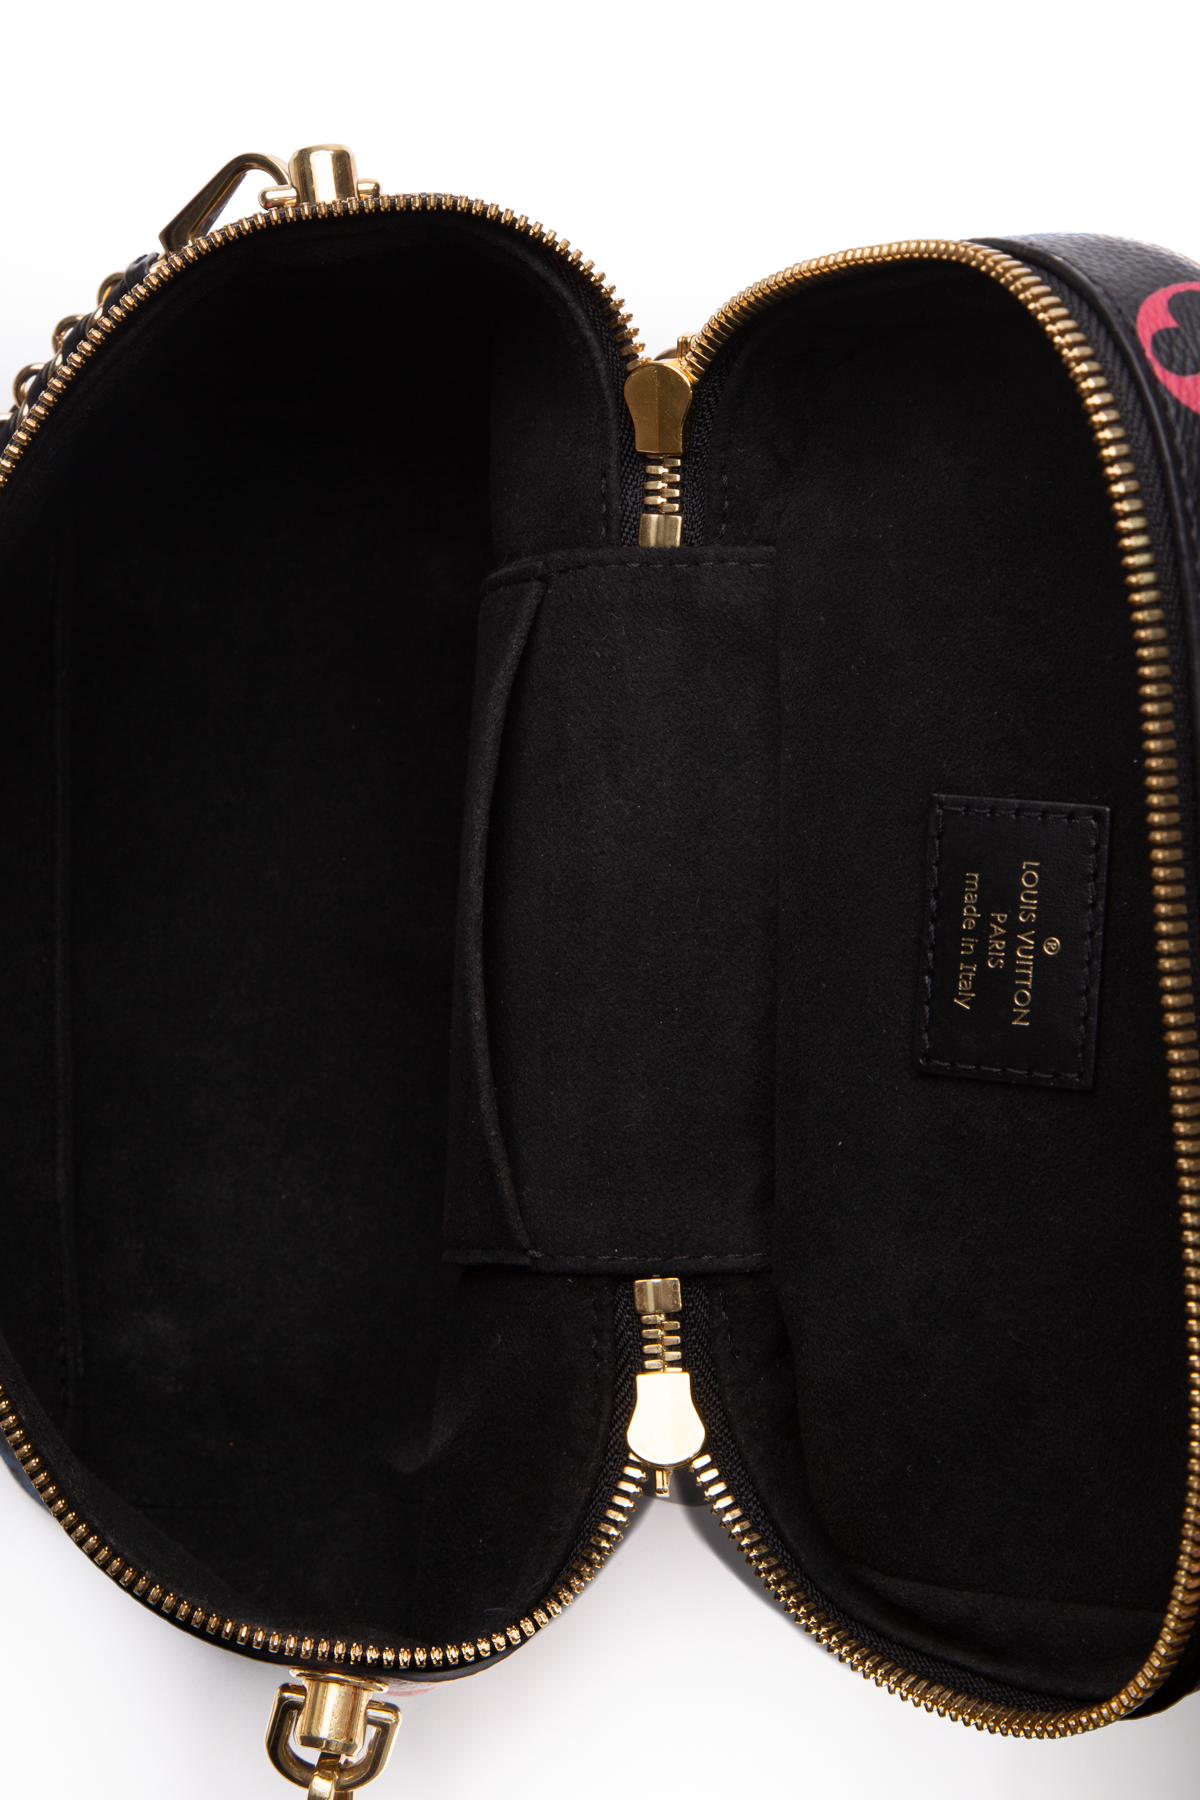 Túi Louis Vuitton Game On Vanity PM Bag siêu cấp màu trắng size 19